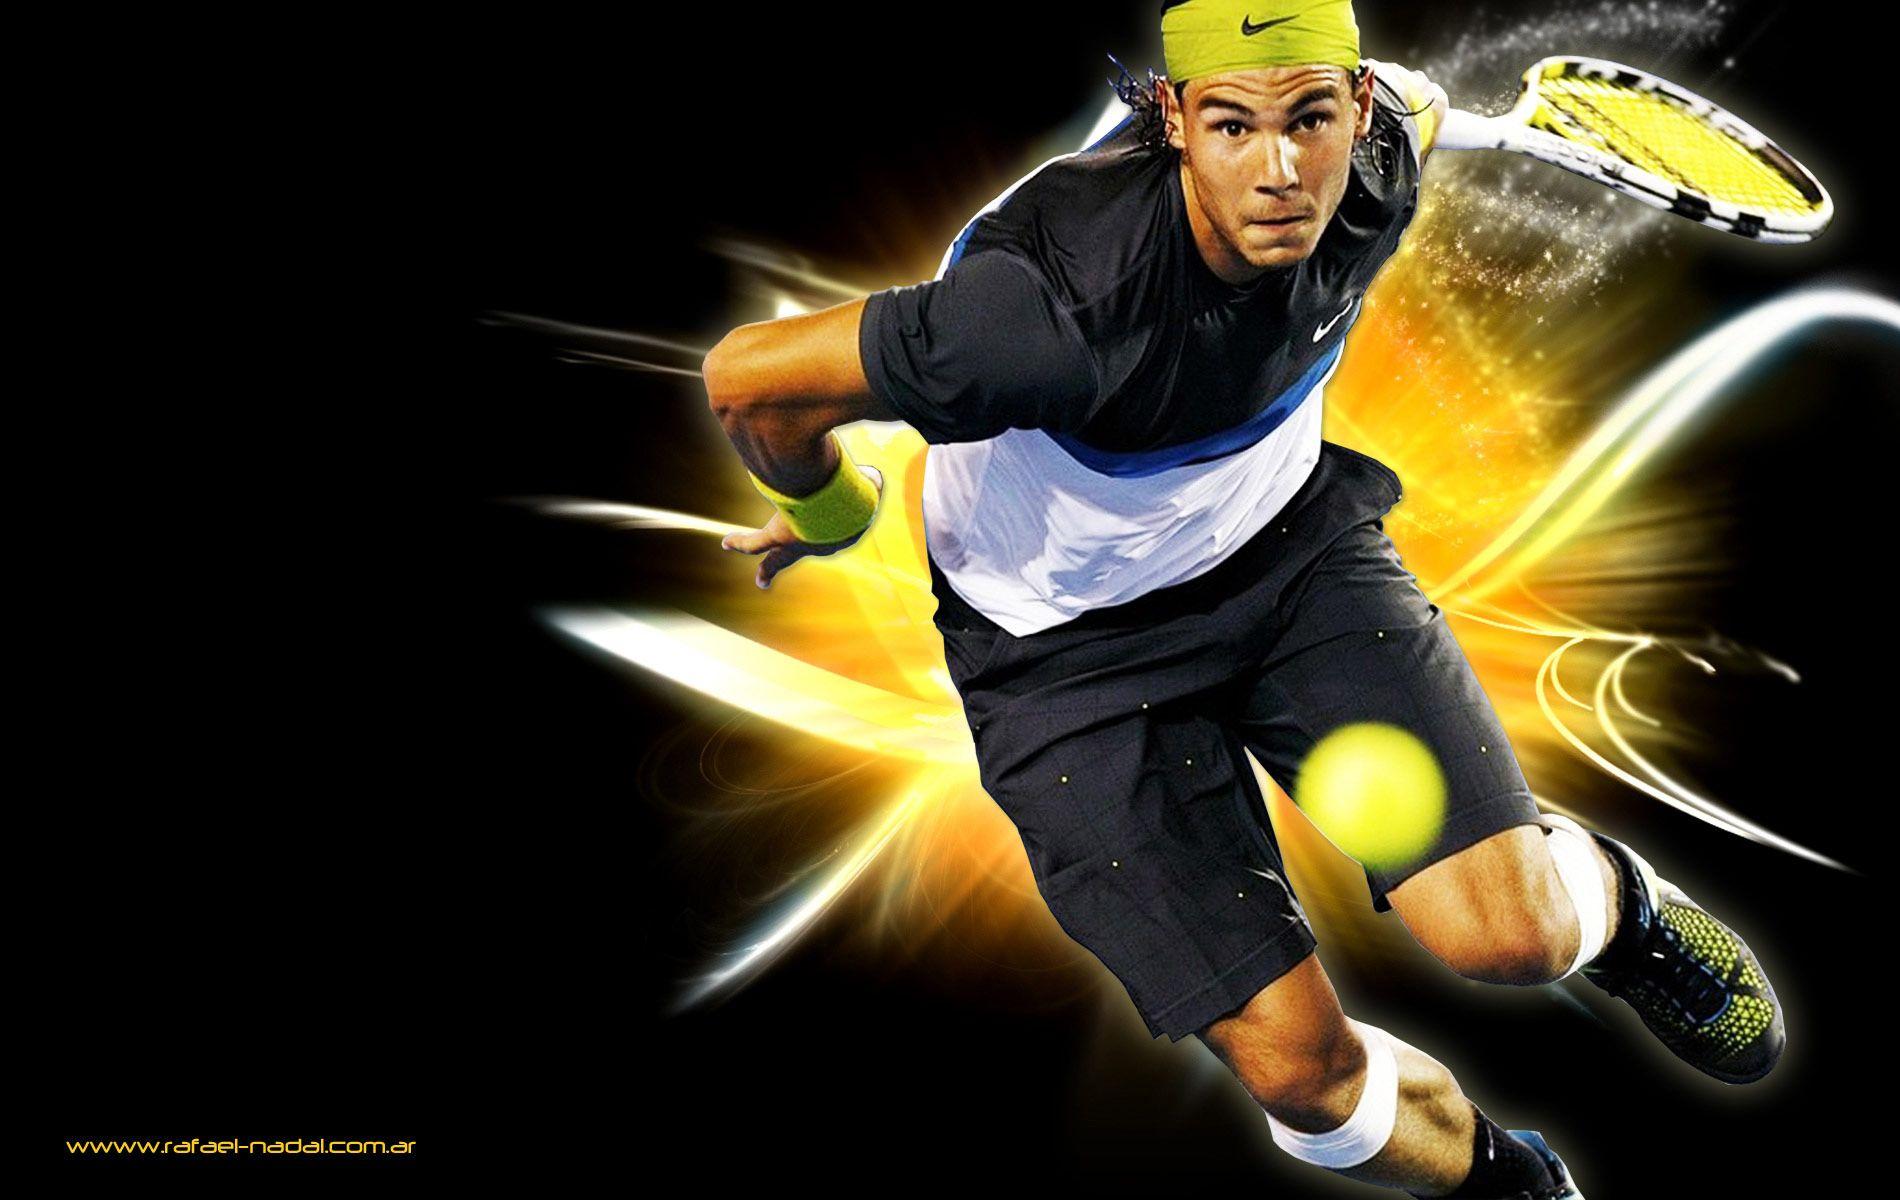 HD Rafael Nadal Wallpaper, Live Rafael Nadal Wallpaper (HPWP)